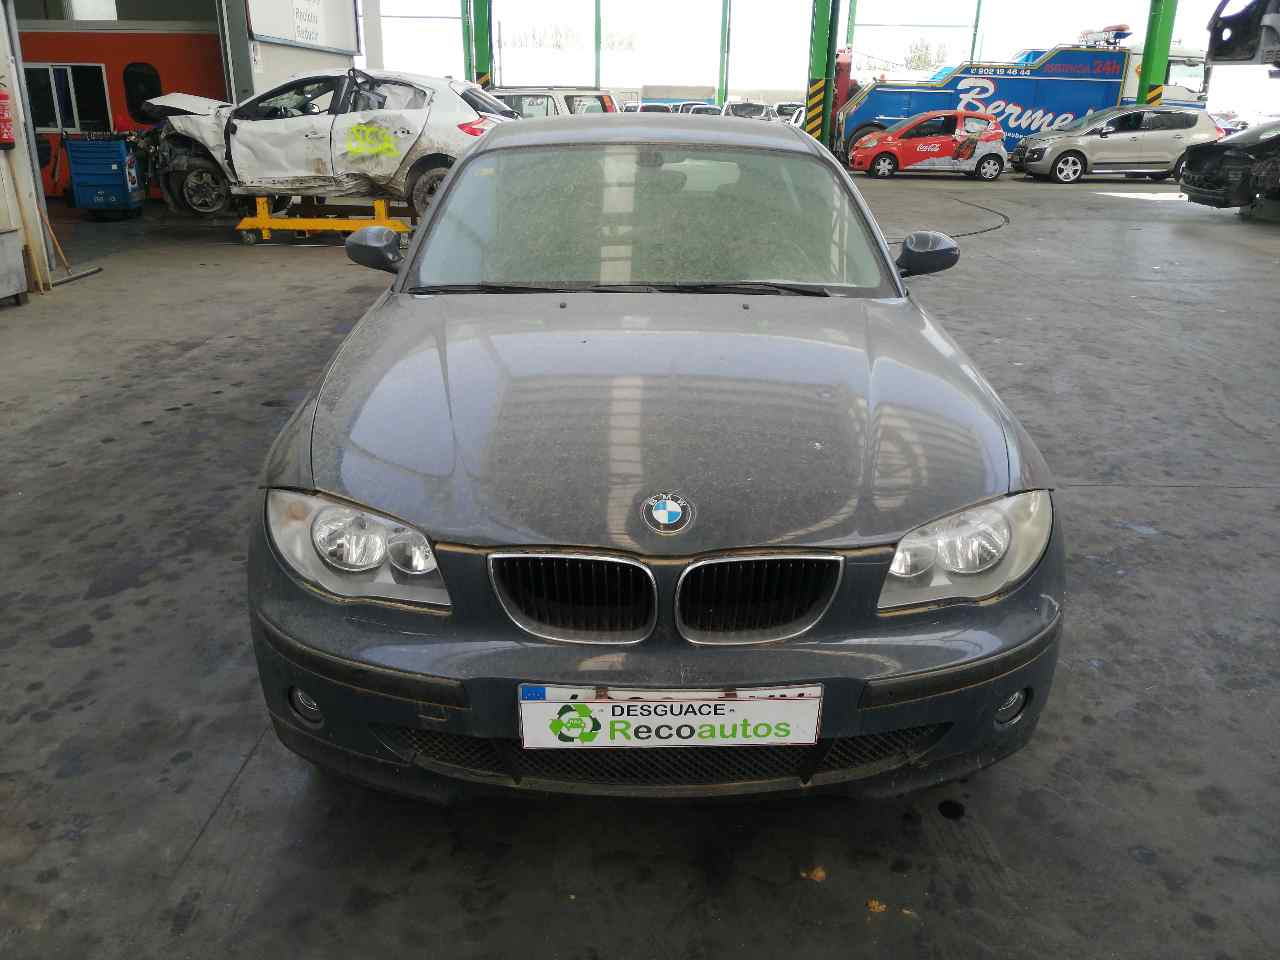 BMW 1 Series E81/E82/E87/E88 (2004-2013) Duslintuvas 7532348, SUELOCESTA104ºMONTON 19816461